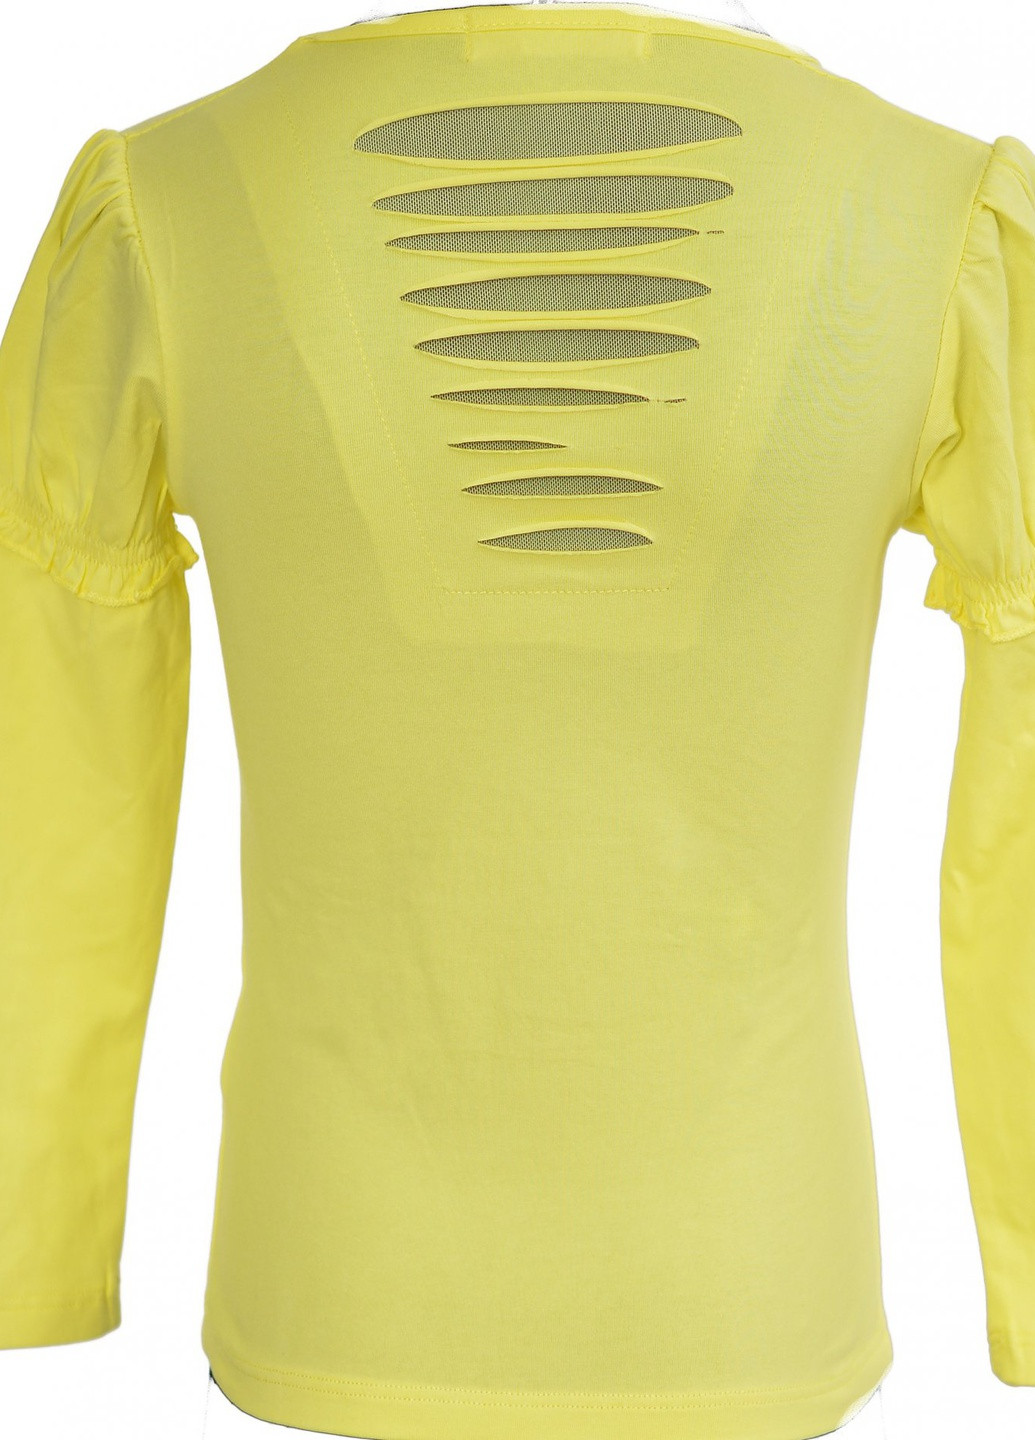 Жовта футболки батник дівчинка (003)11926-736 Lemanta